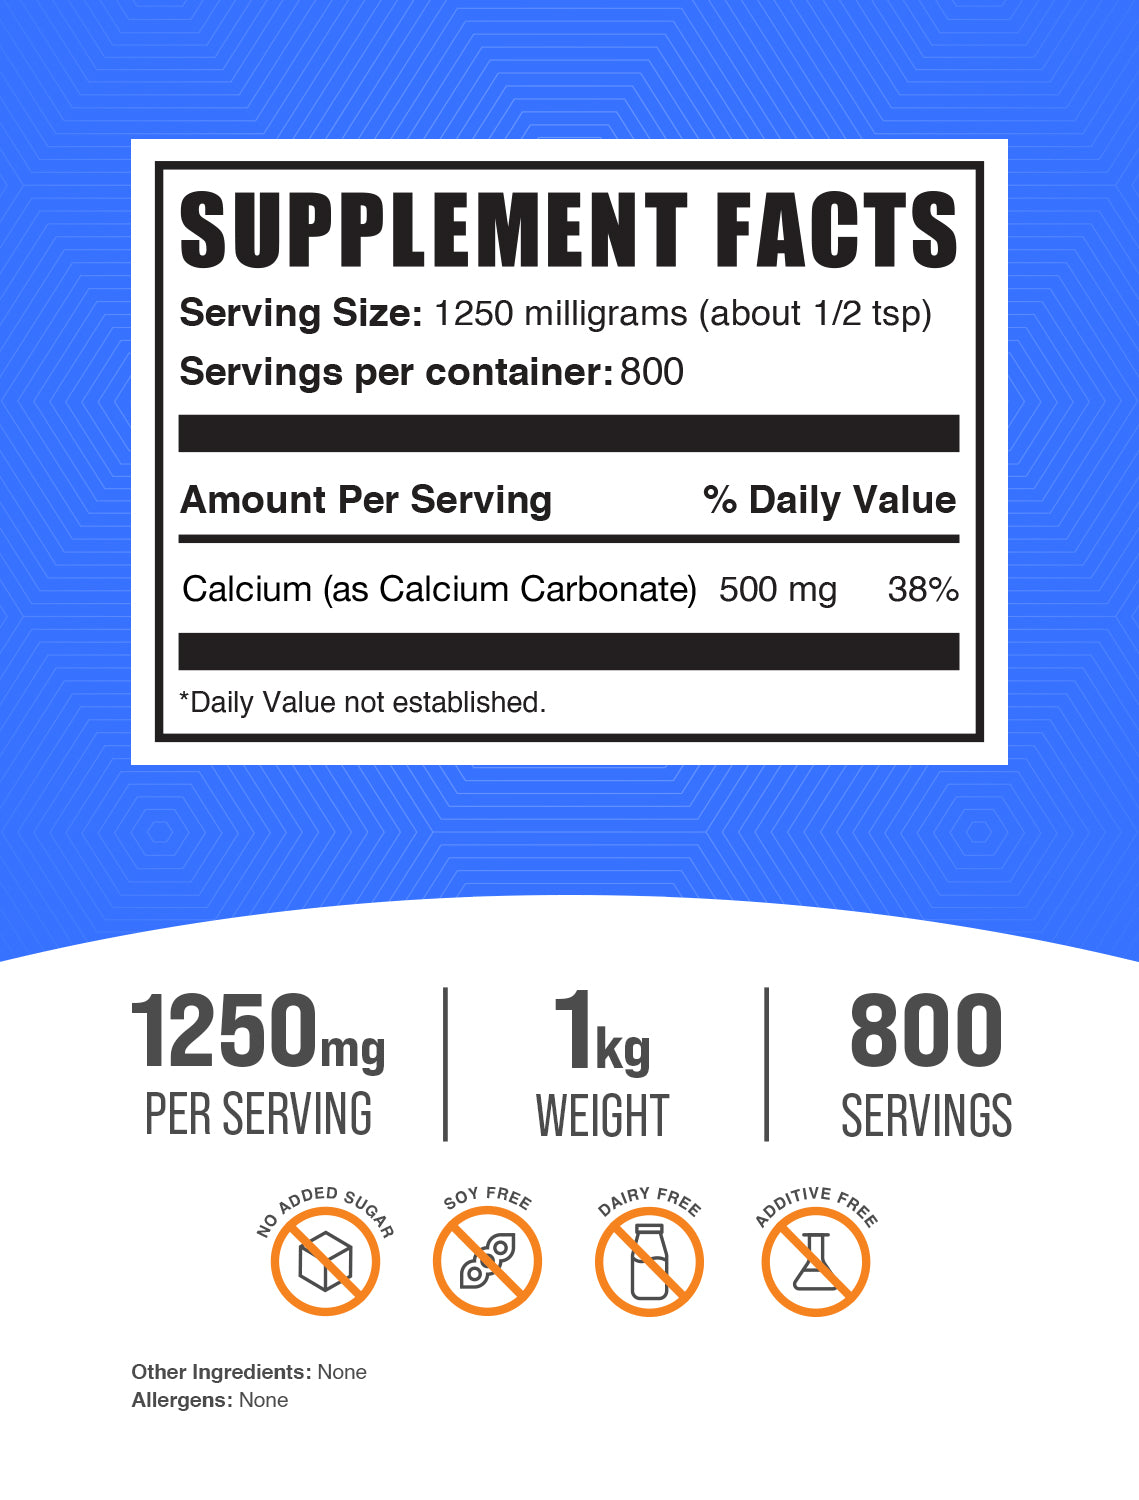 Supplement facts calcium carbonate 1kg